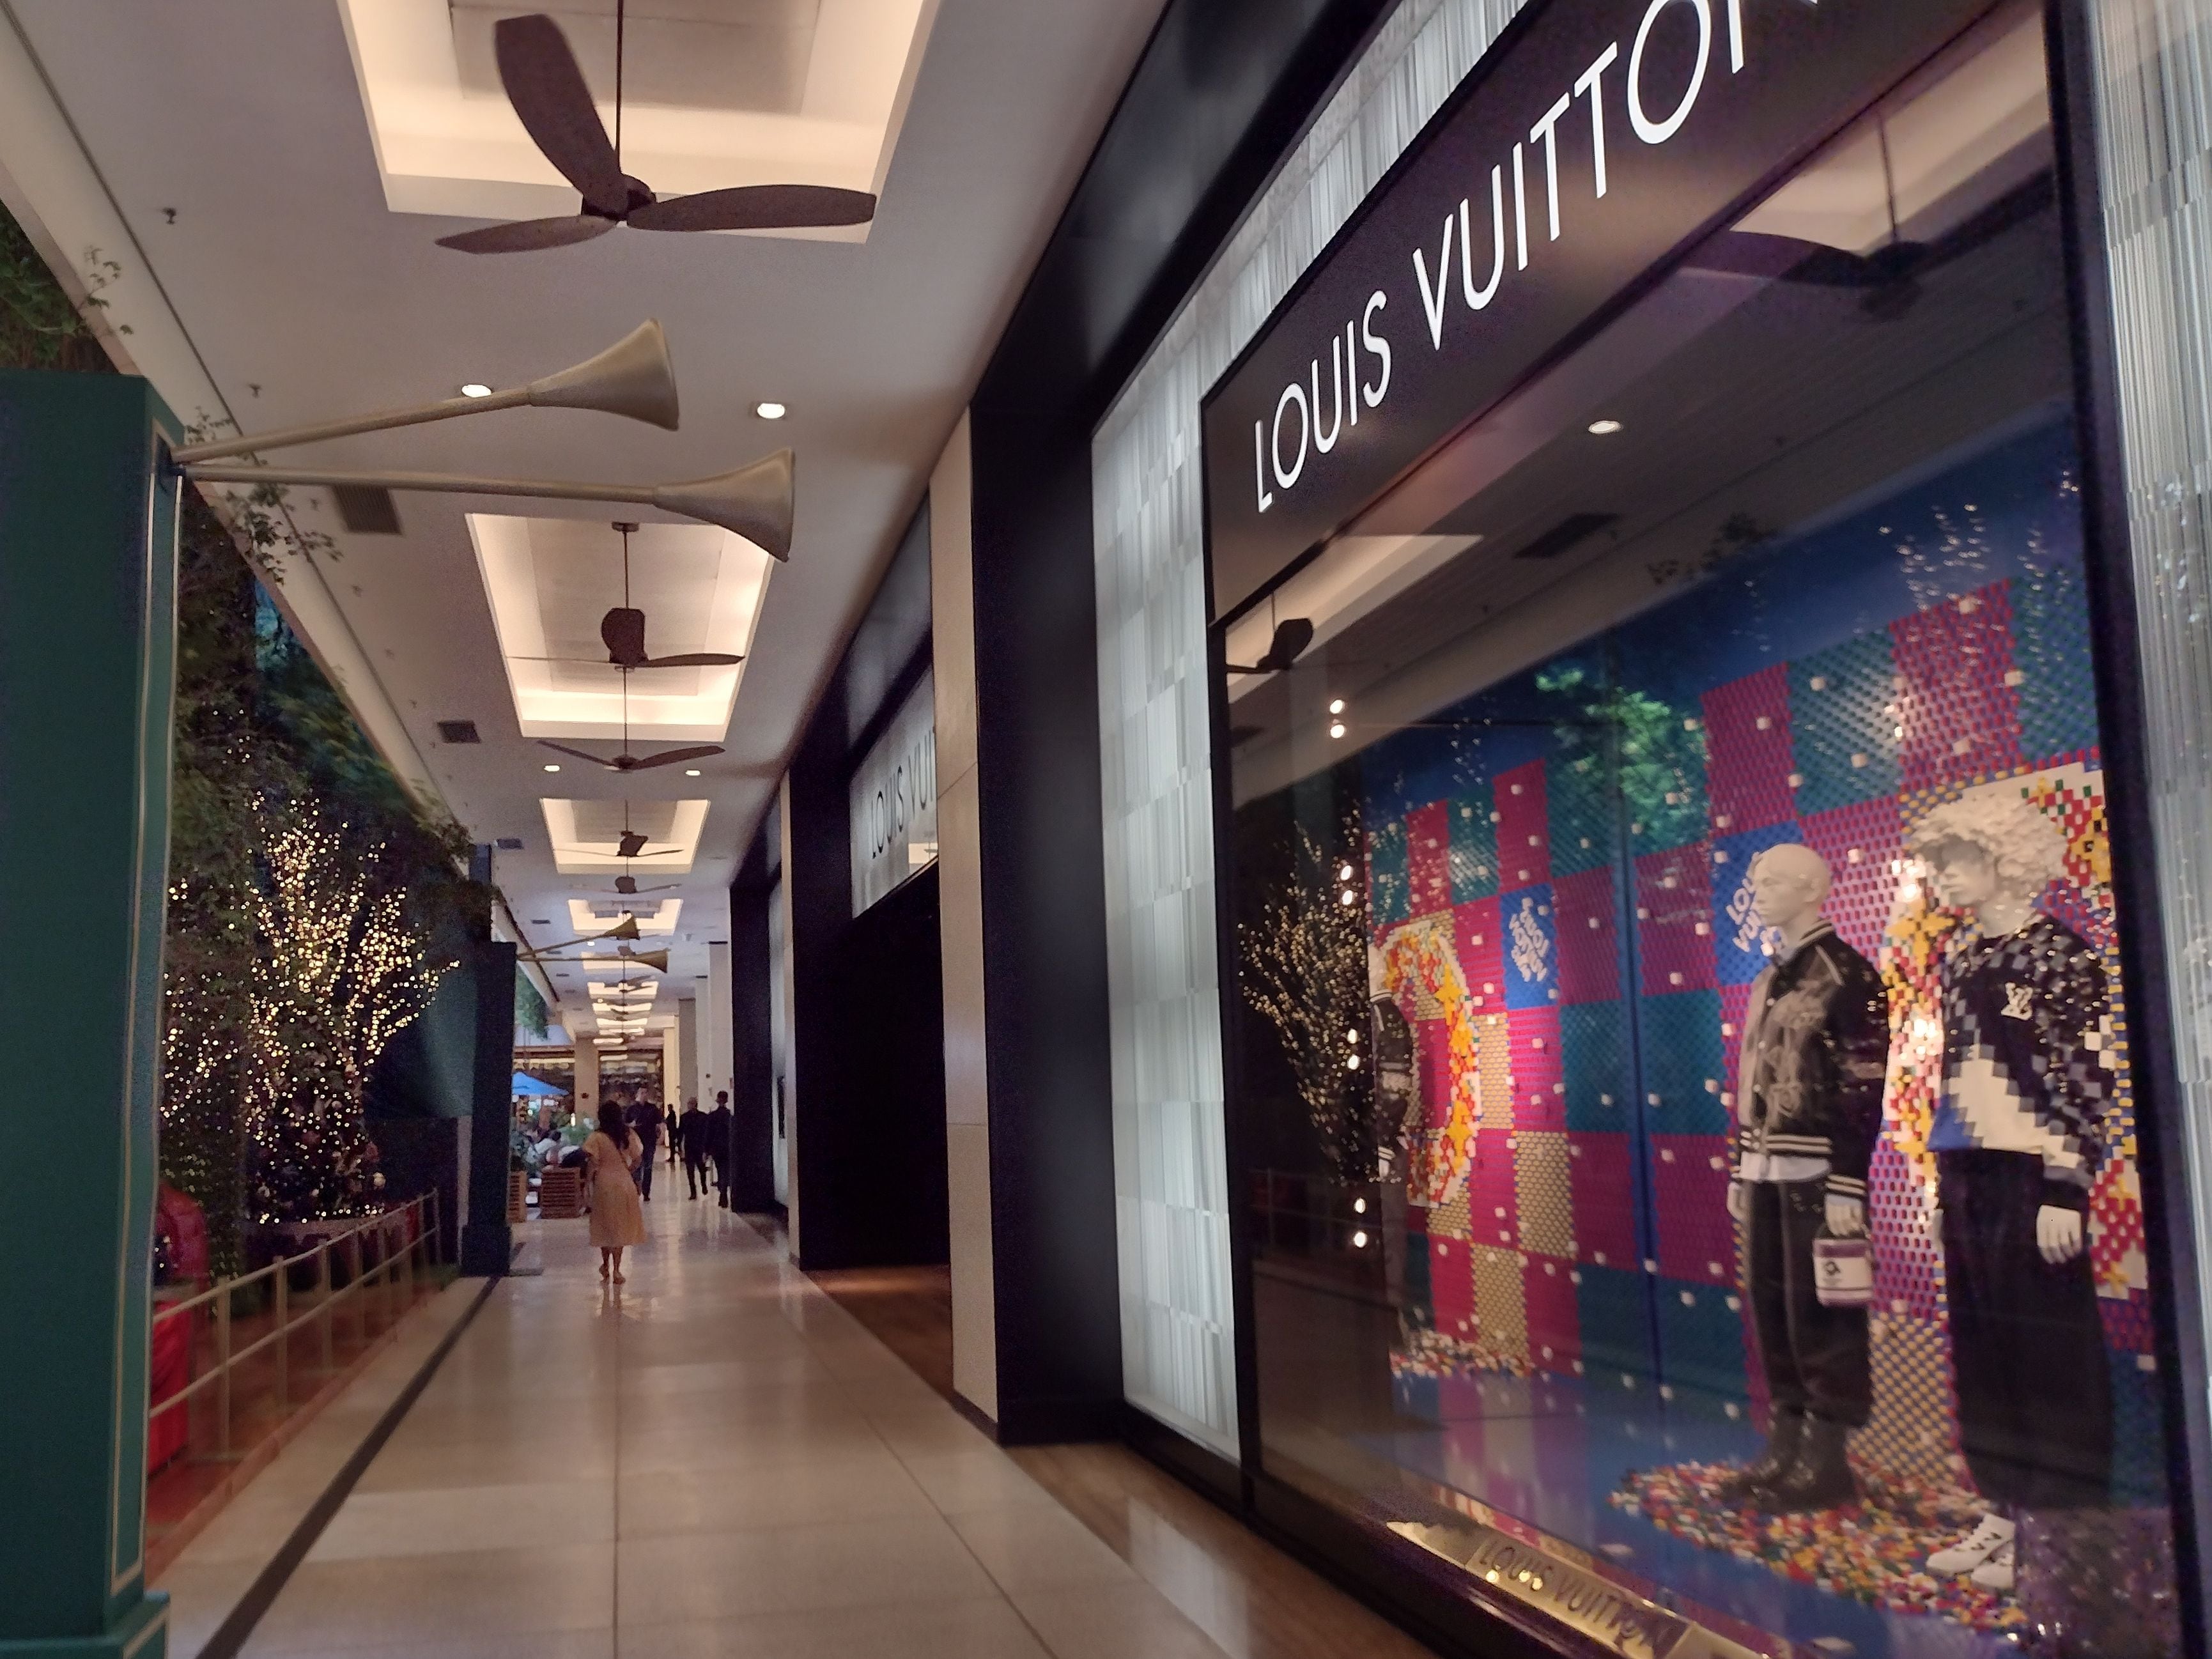 Rede de varejo H&M abrirá lojas no Brasil em 2025